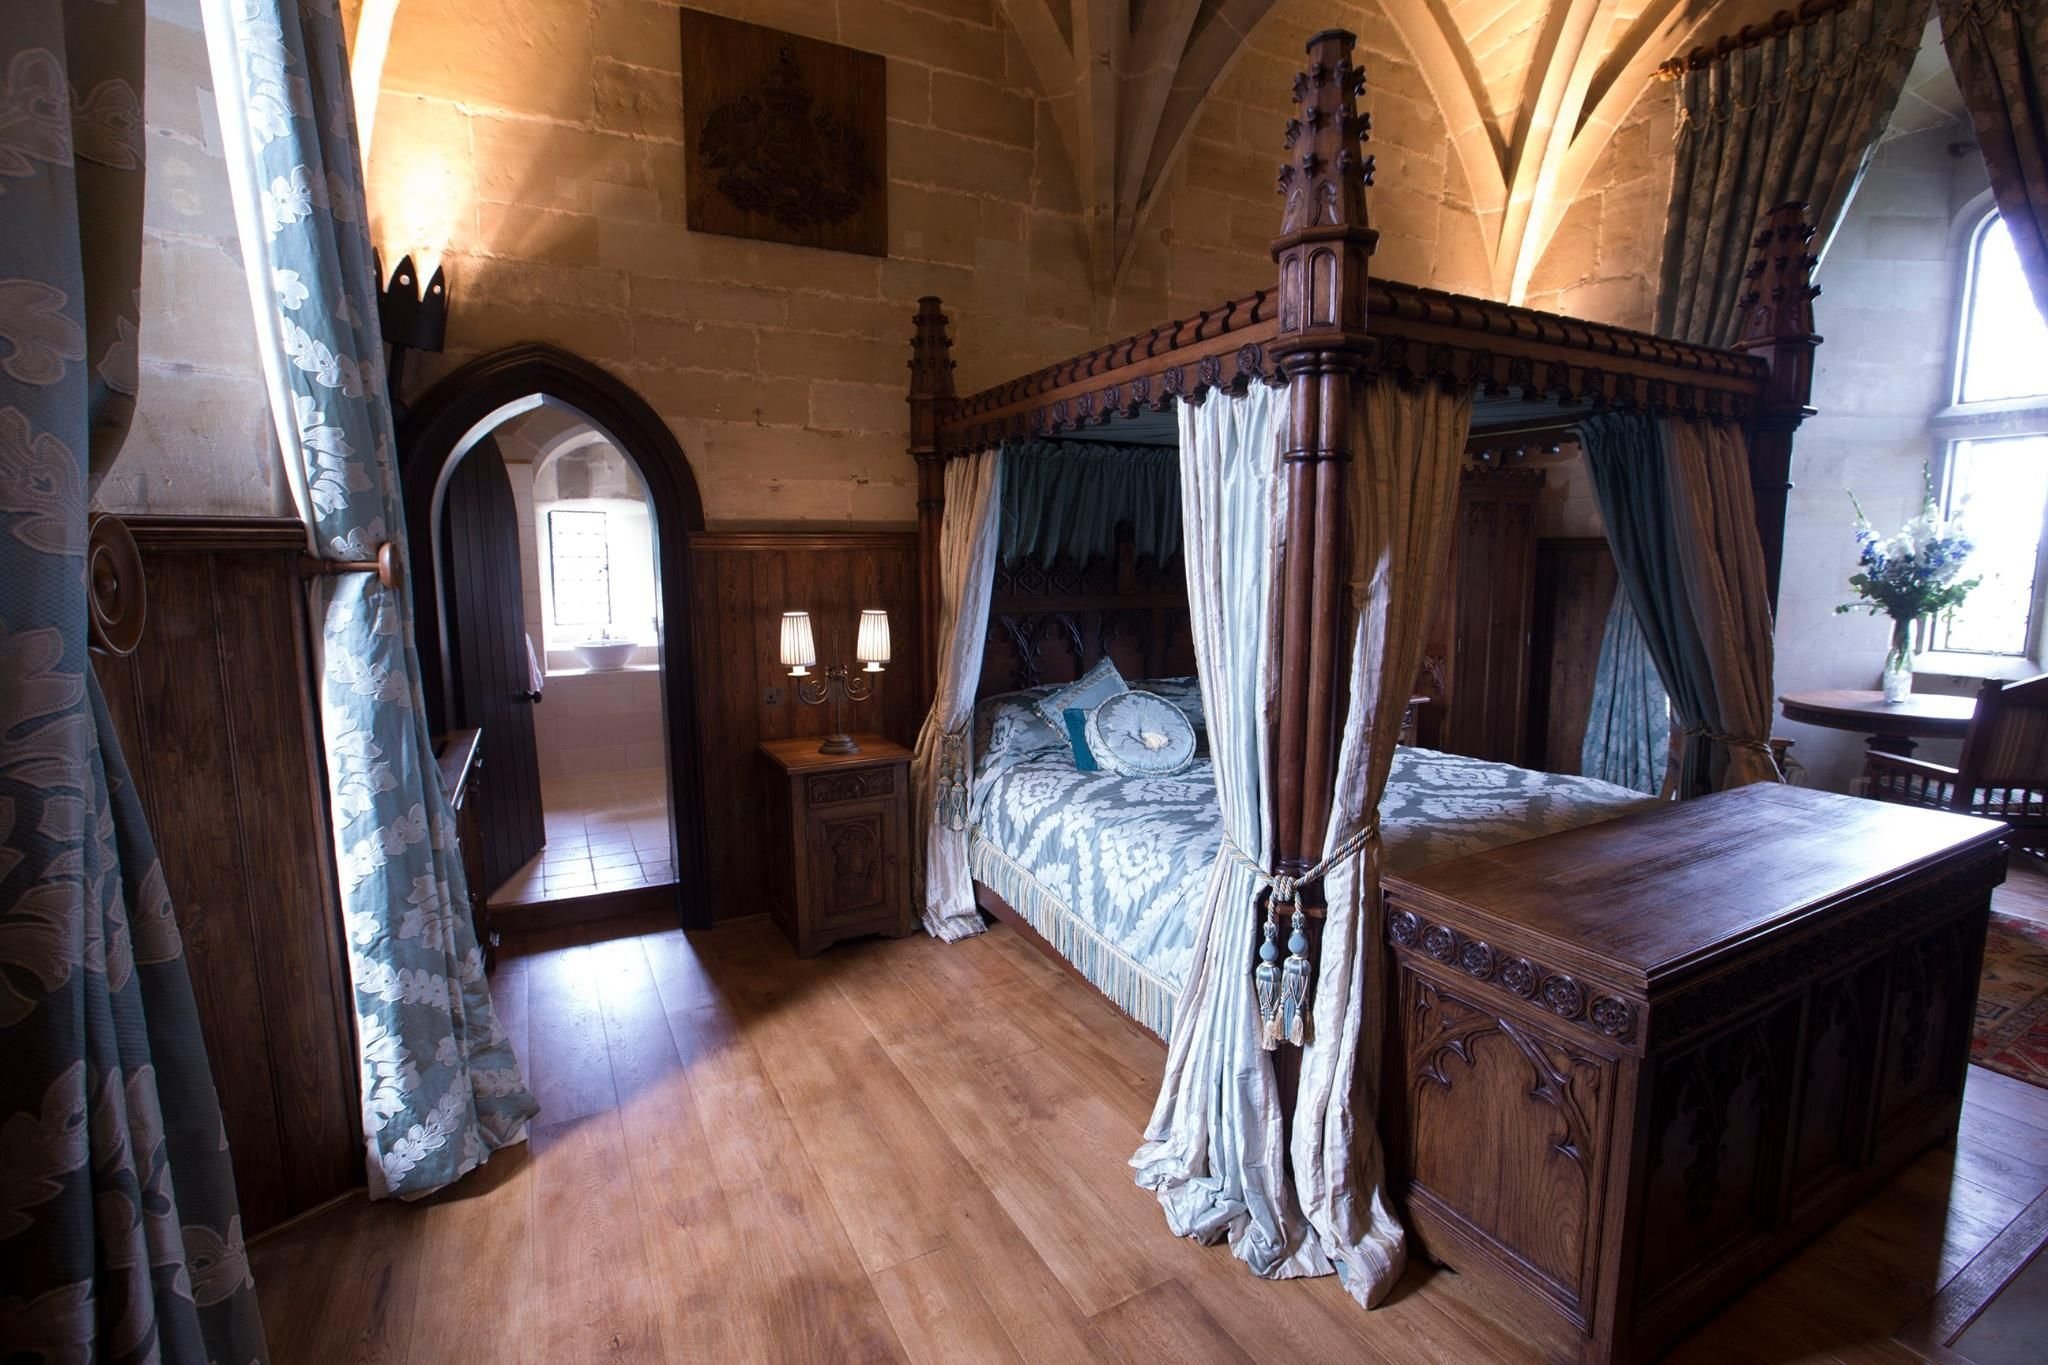 12 замков комната. Спальня в замке Уорик в Англии. Романский стиль в интерьере средневековья. Замок Уорик интерьеры. Покои королевы Тауэр.